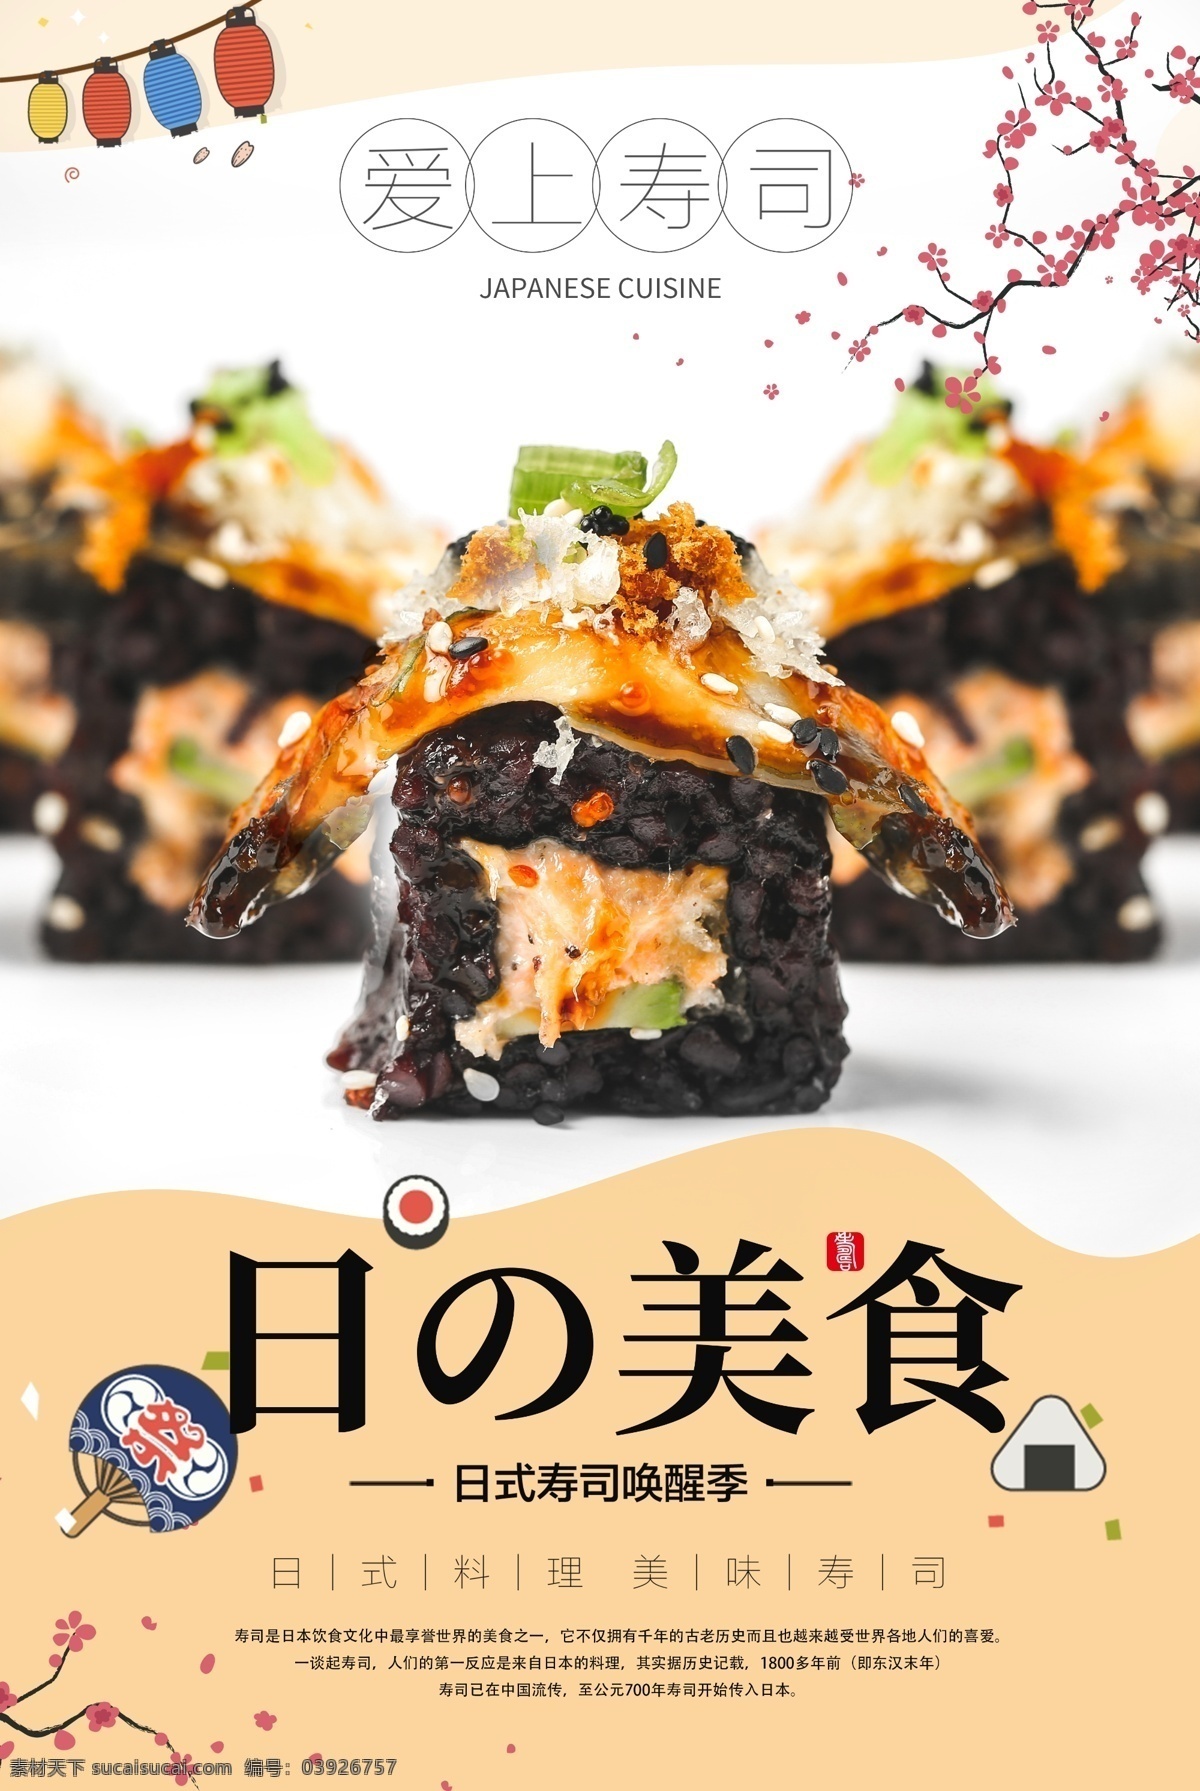 日本 美食 料理 寿司 海报 日料 寿司海报 促销 寿司促销 日本寿司 日本寿司海报